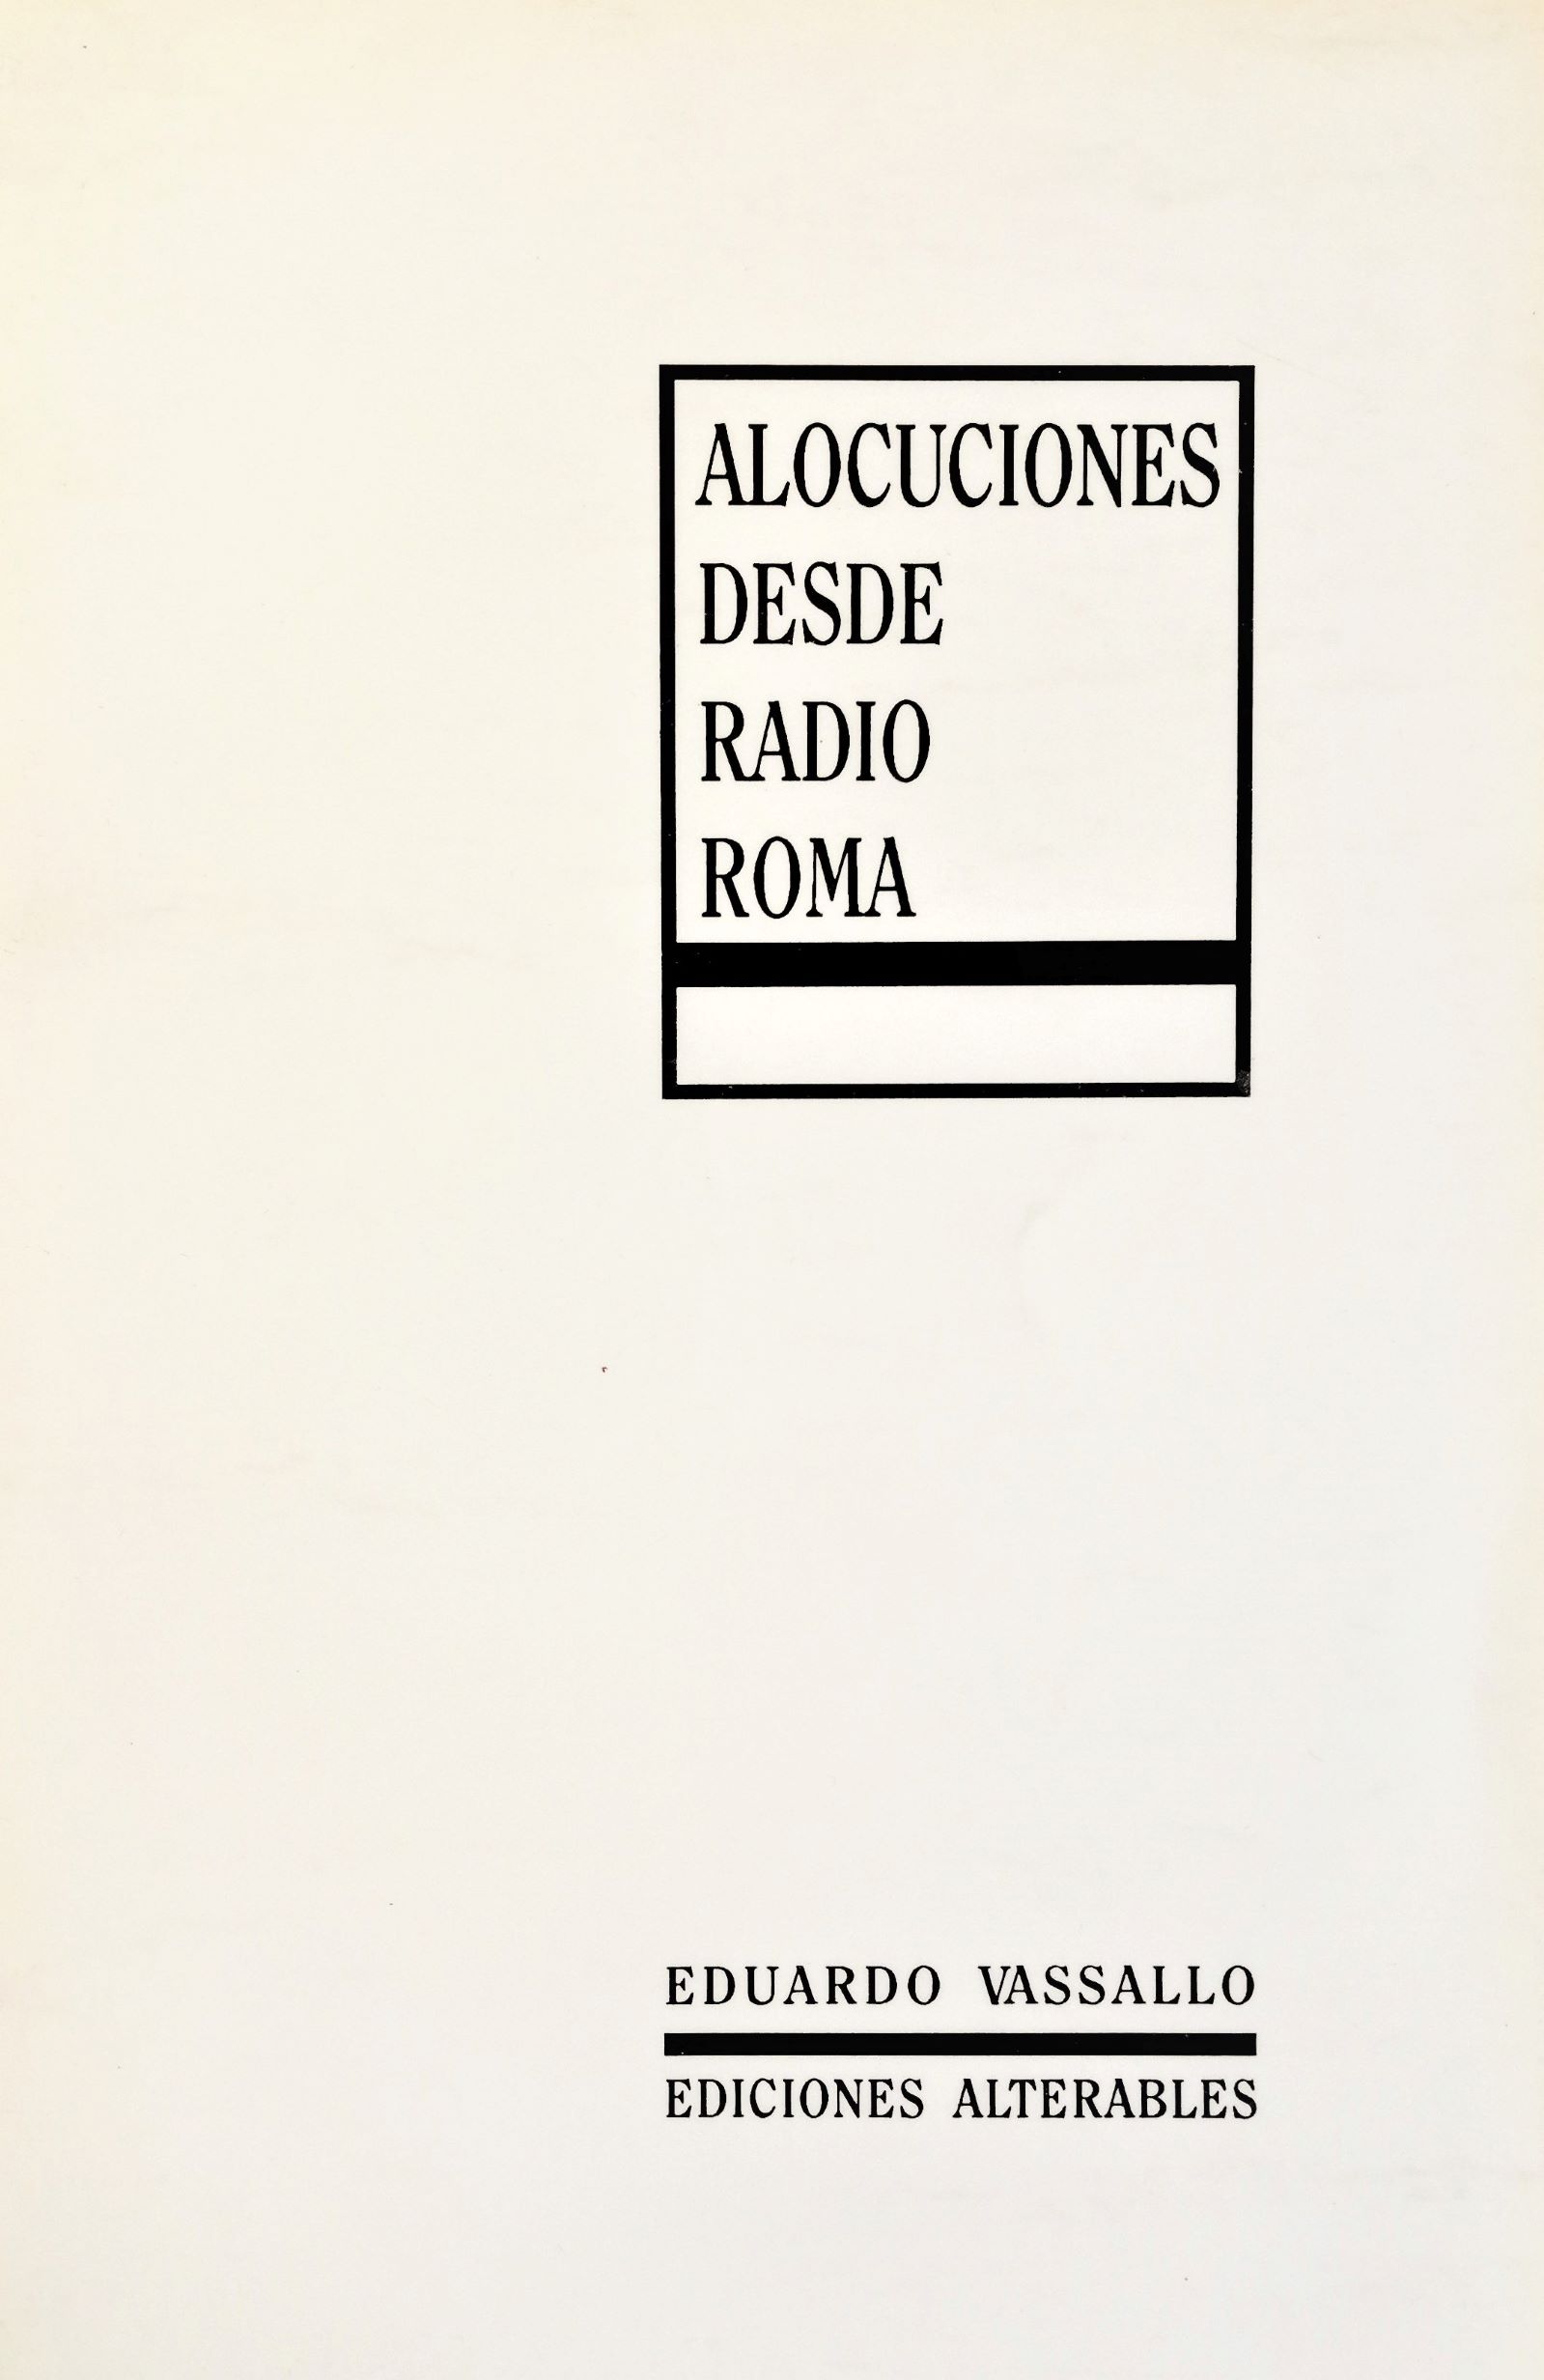 Eduardo Vassallo - Alocuciones desde radio roma